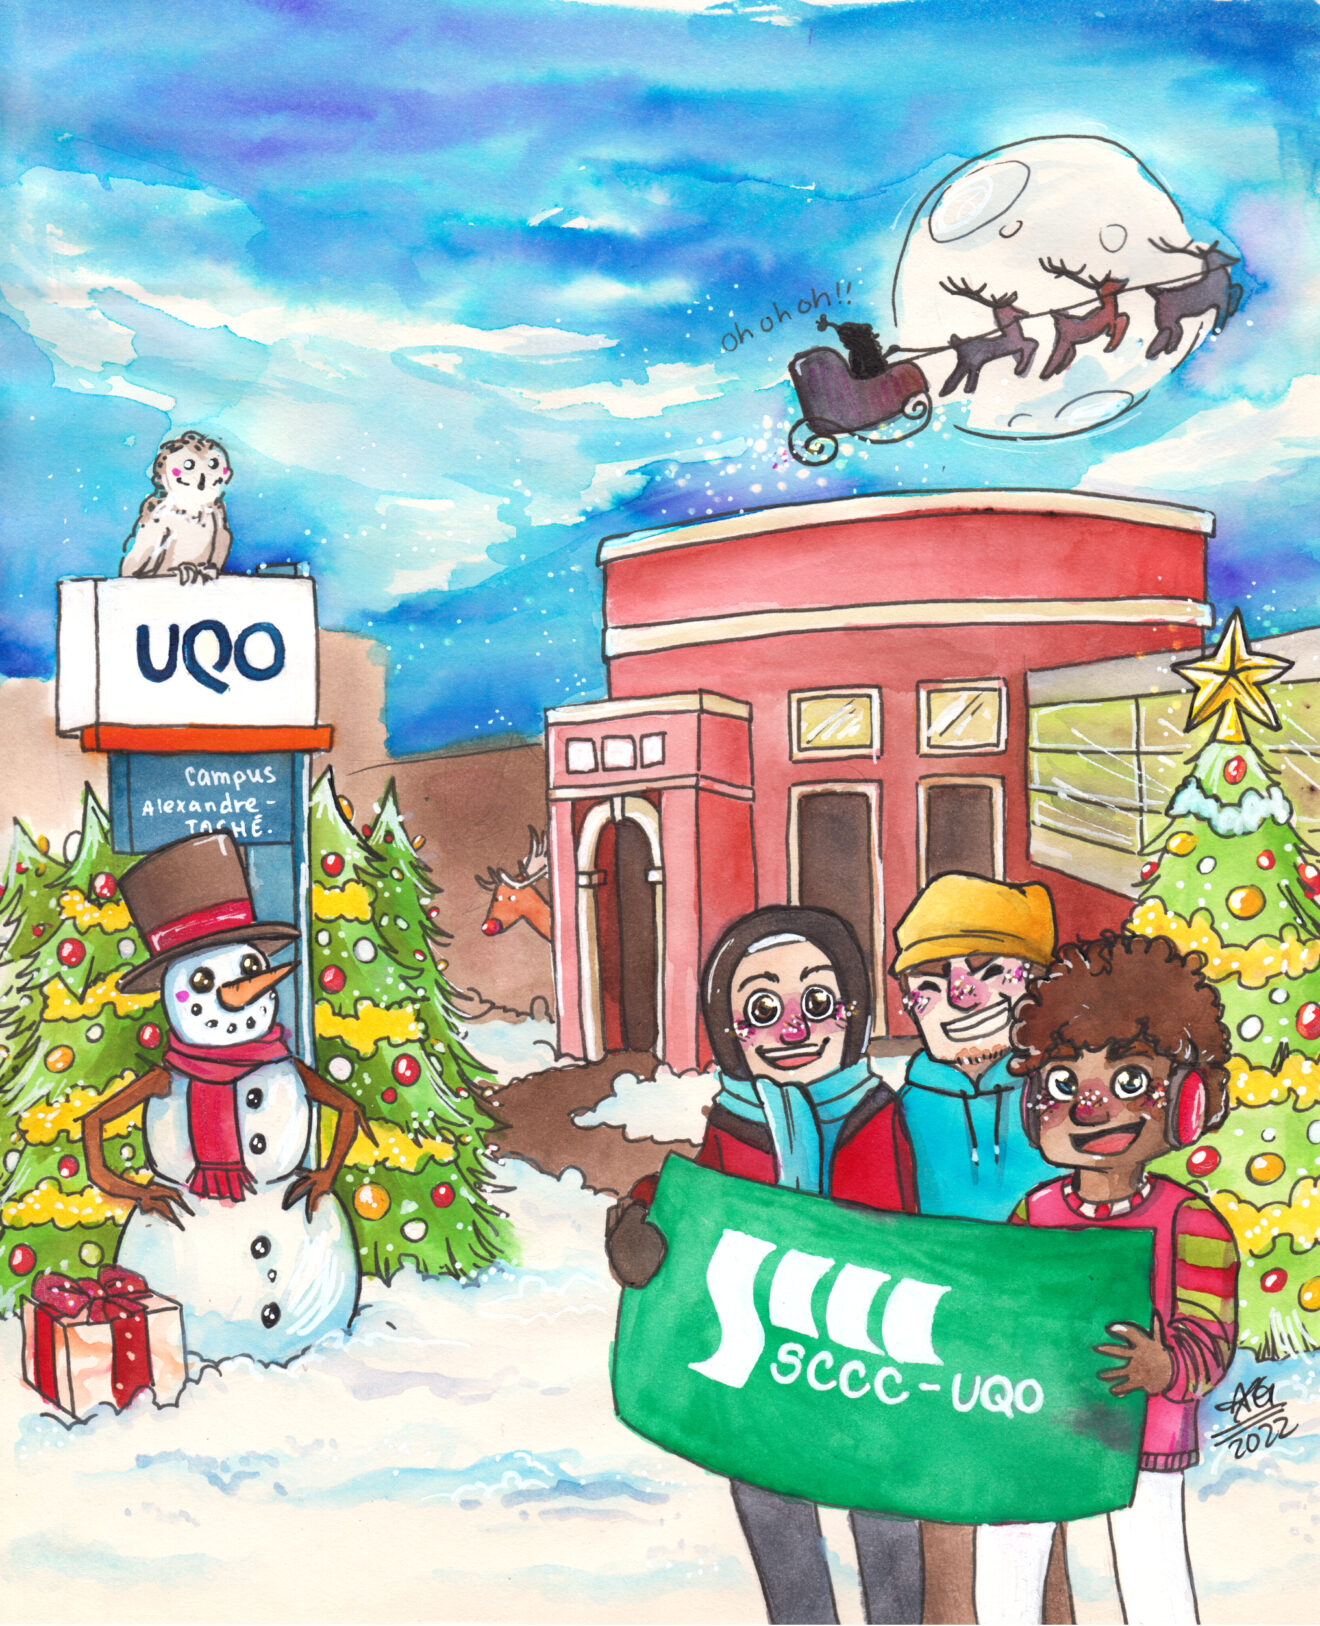 Envoyez la carte de Noël du SCCC-UQO à vos collègues et à vos proches!